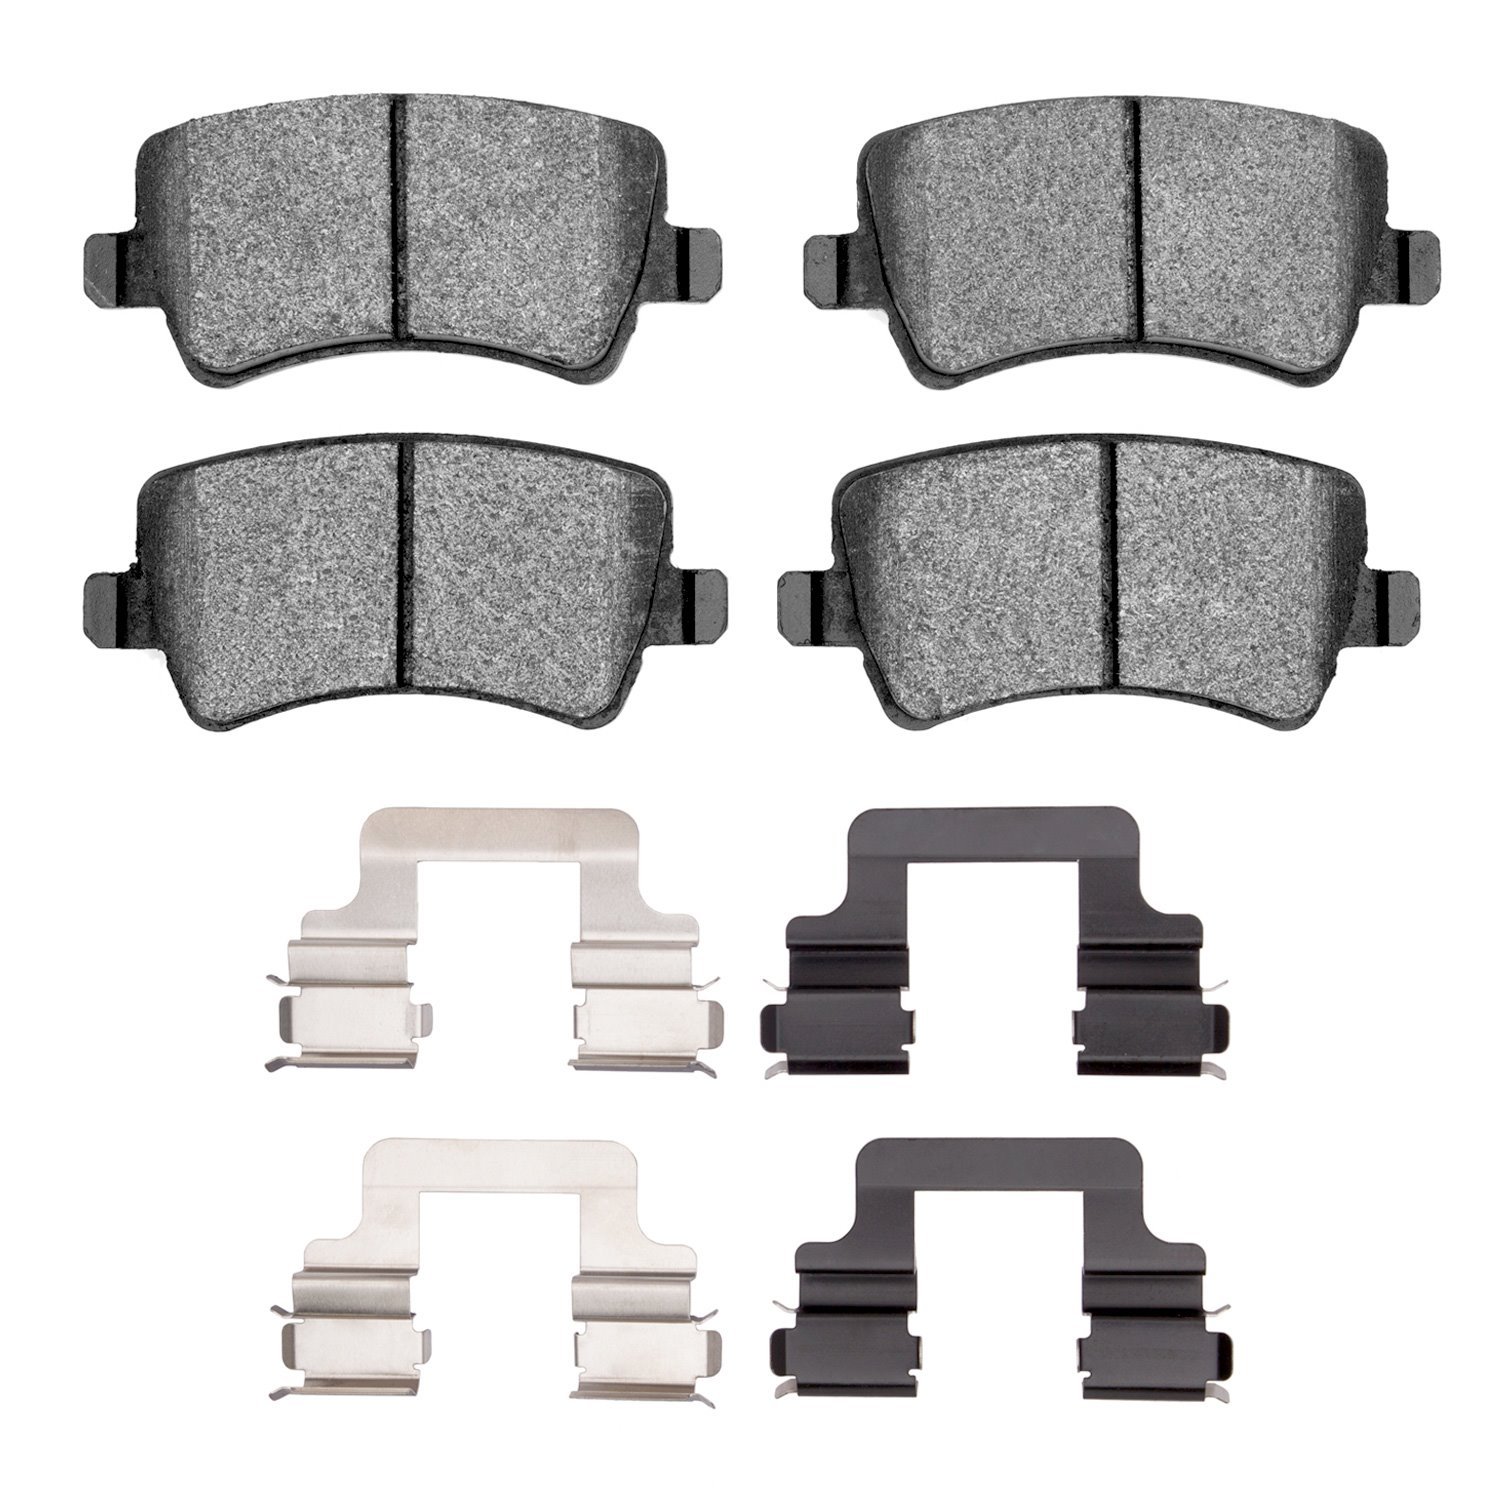 1551-1307-02 5000 Advanced Ceramic Brake Pads & Hardware Kit, 2007-2018 Volvo, Position: Rear